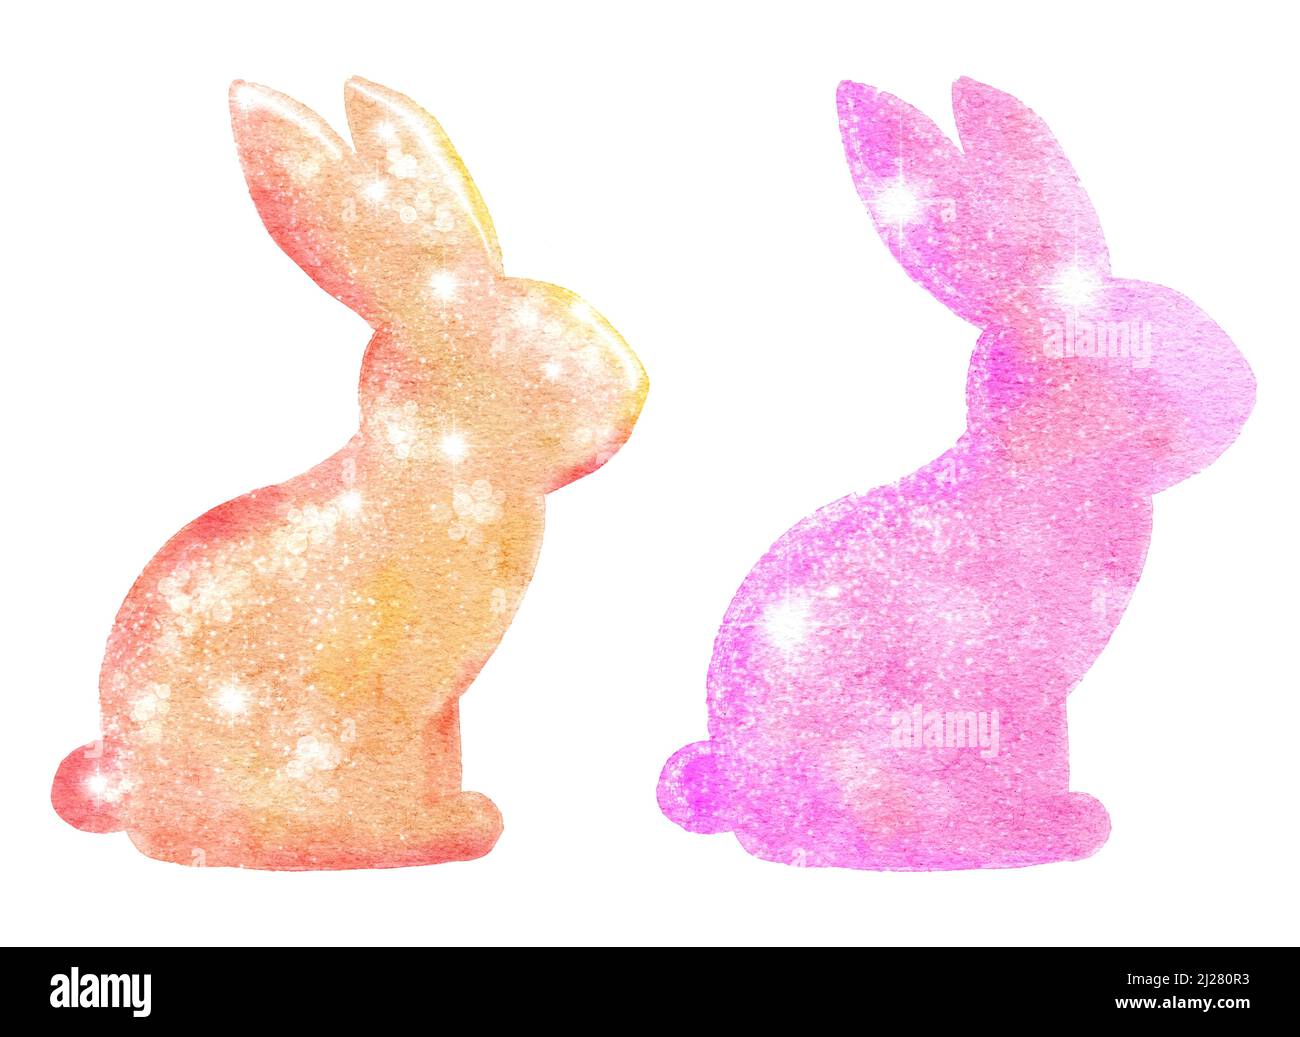 Aquarell-Osterhasen Kaninchen mit glänzend schimmernder Glitzerstruktur, Pastellfarben-Design. April Frühling religiöse Feier, für Karten Einladungen Drucke Stockfoto